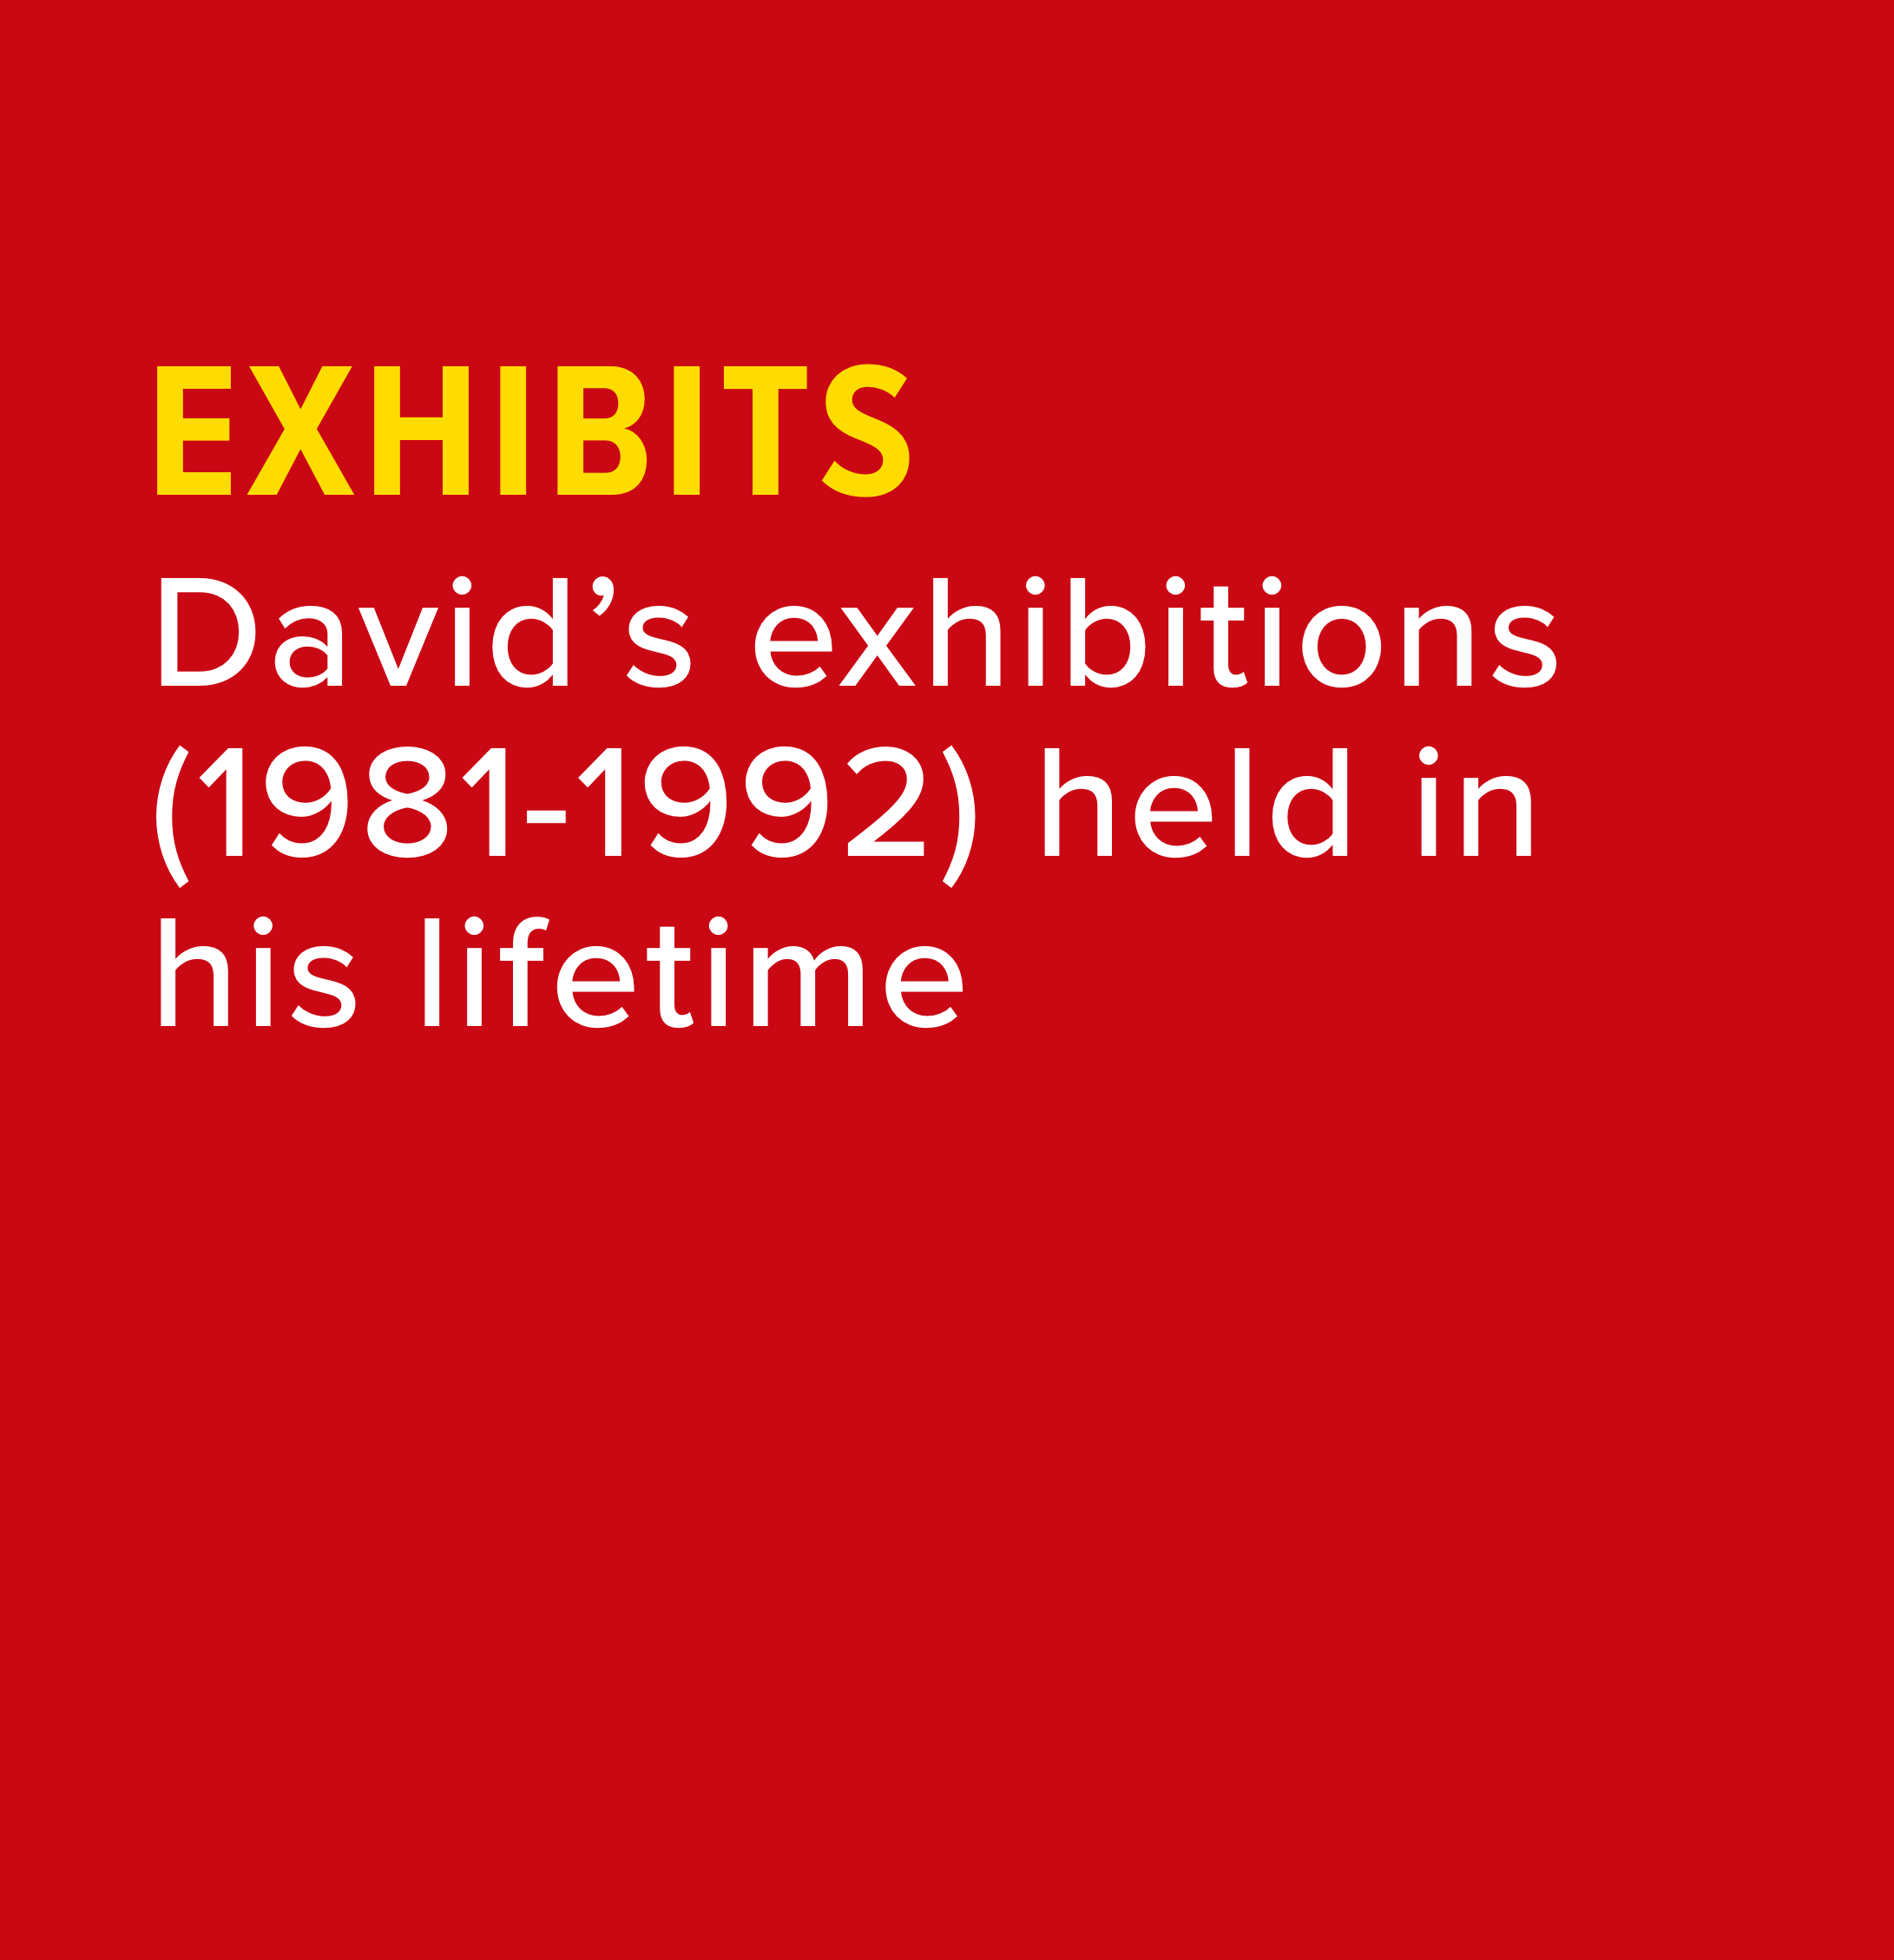 David’s exhibitions (1981-1992) held in his lifetime